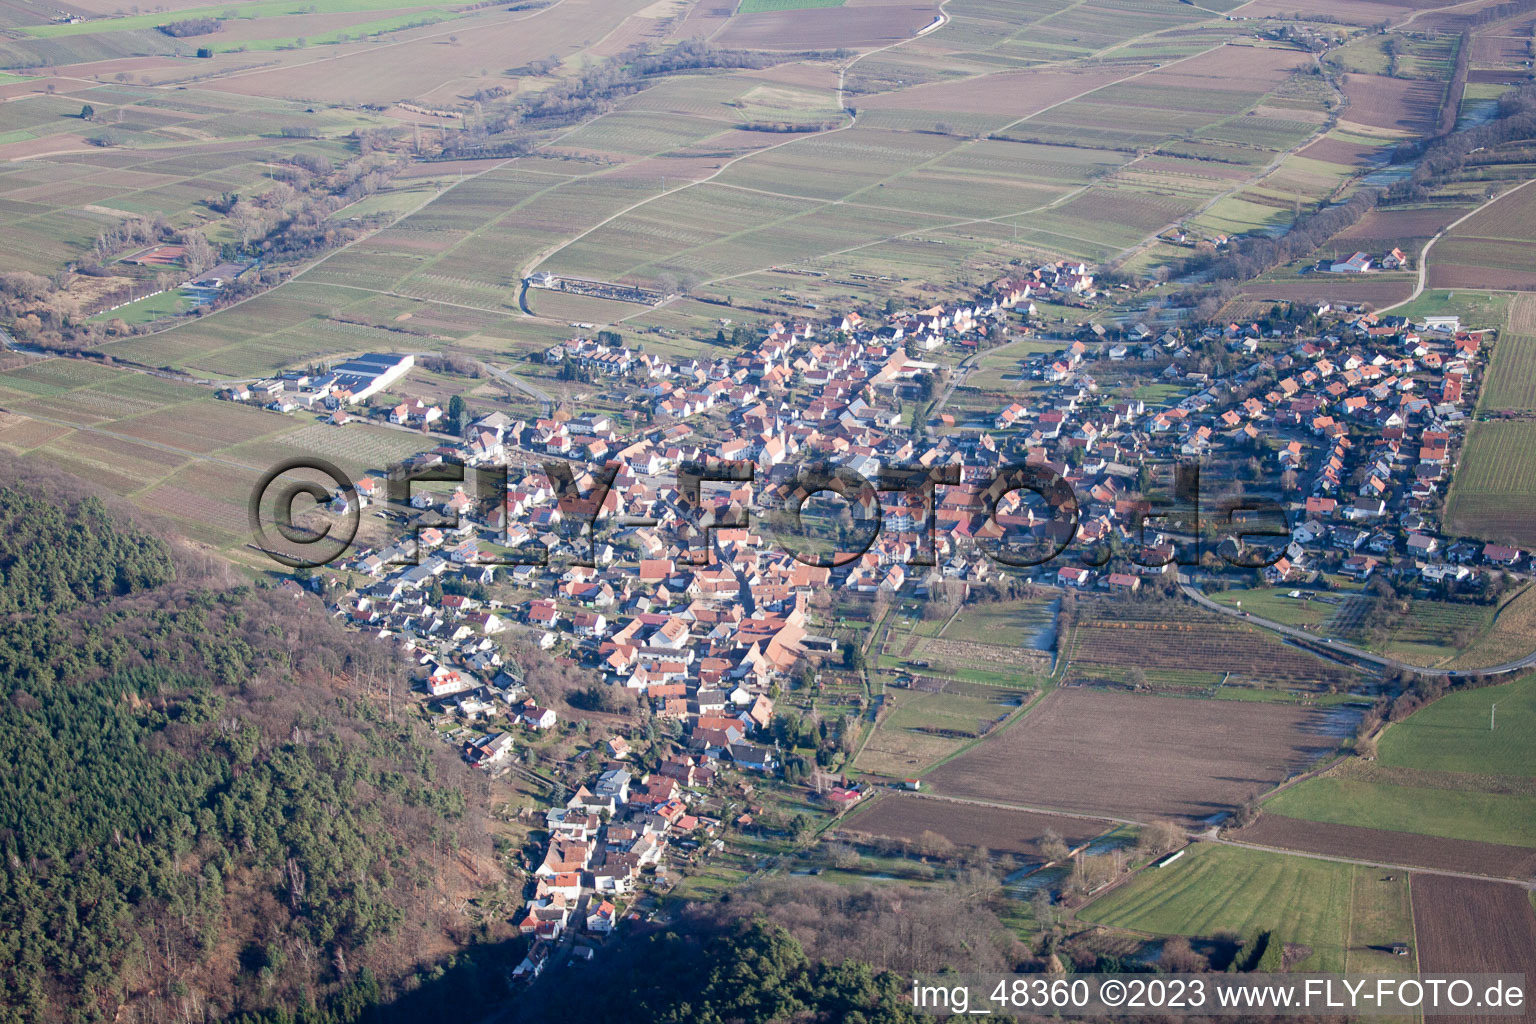 District Rechtenbach in Schweigen-Rechtenbach in the state Rhineland-Palatinate, Germany seen from above